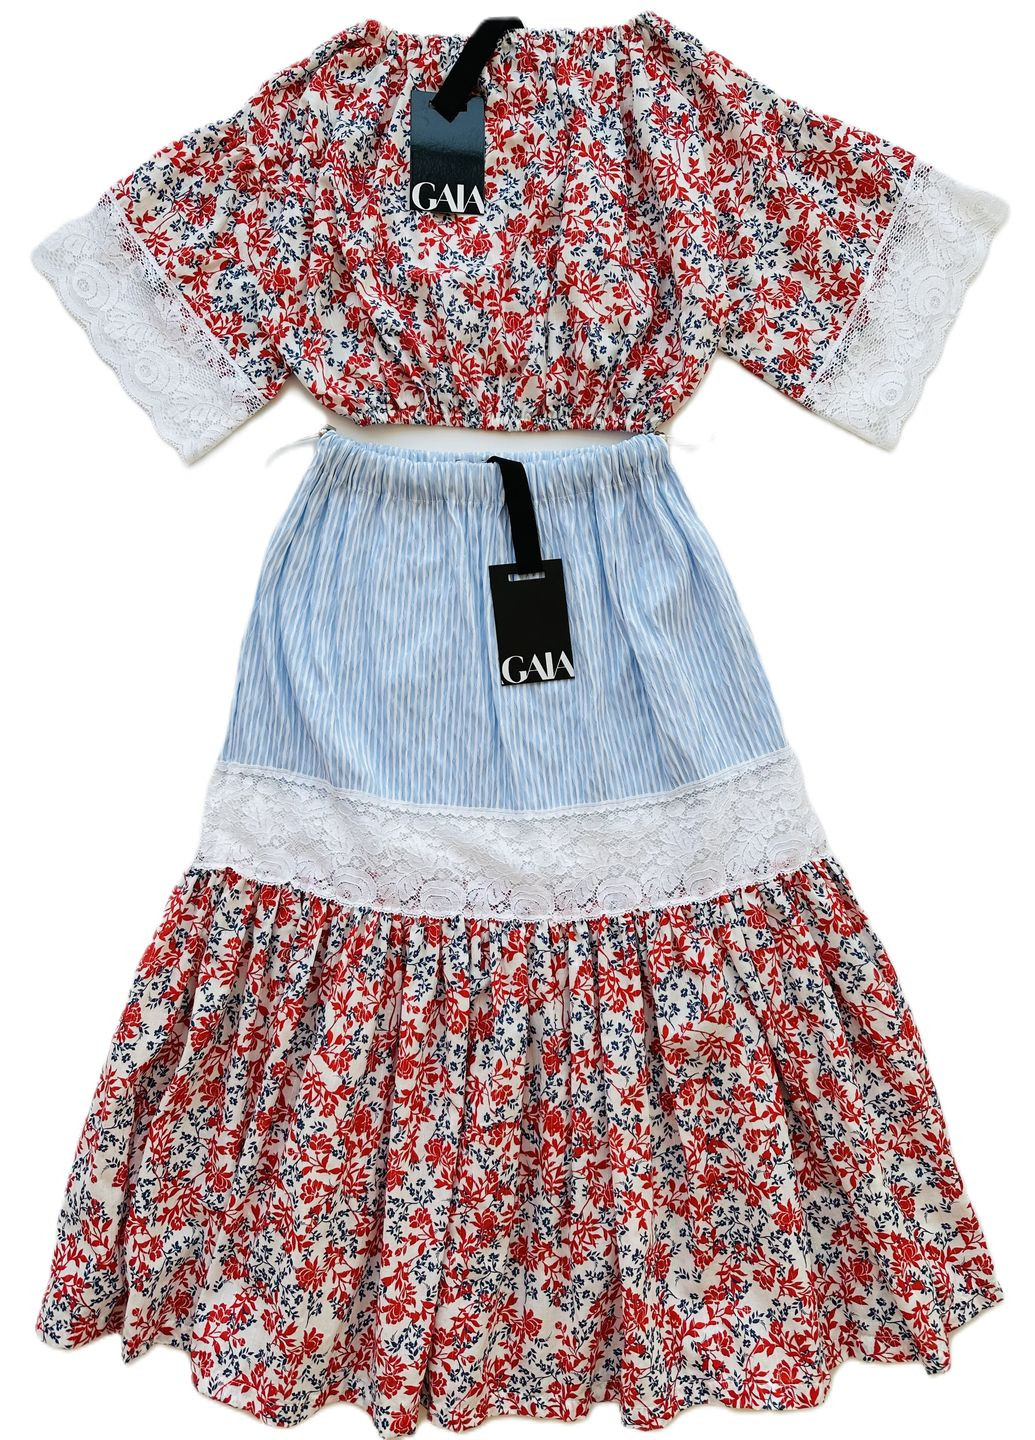 Голубой летний комплект костюм-тройка для девочки юбка+блуза+топ g3223/3225/3227 Gaialuna